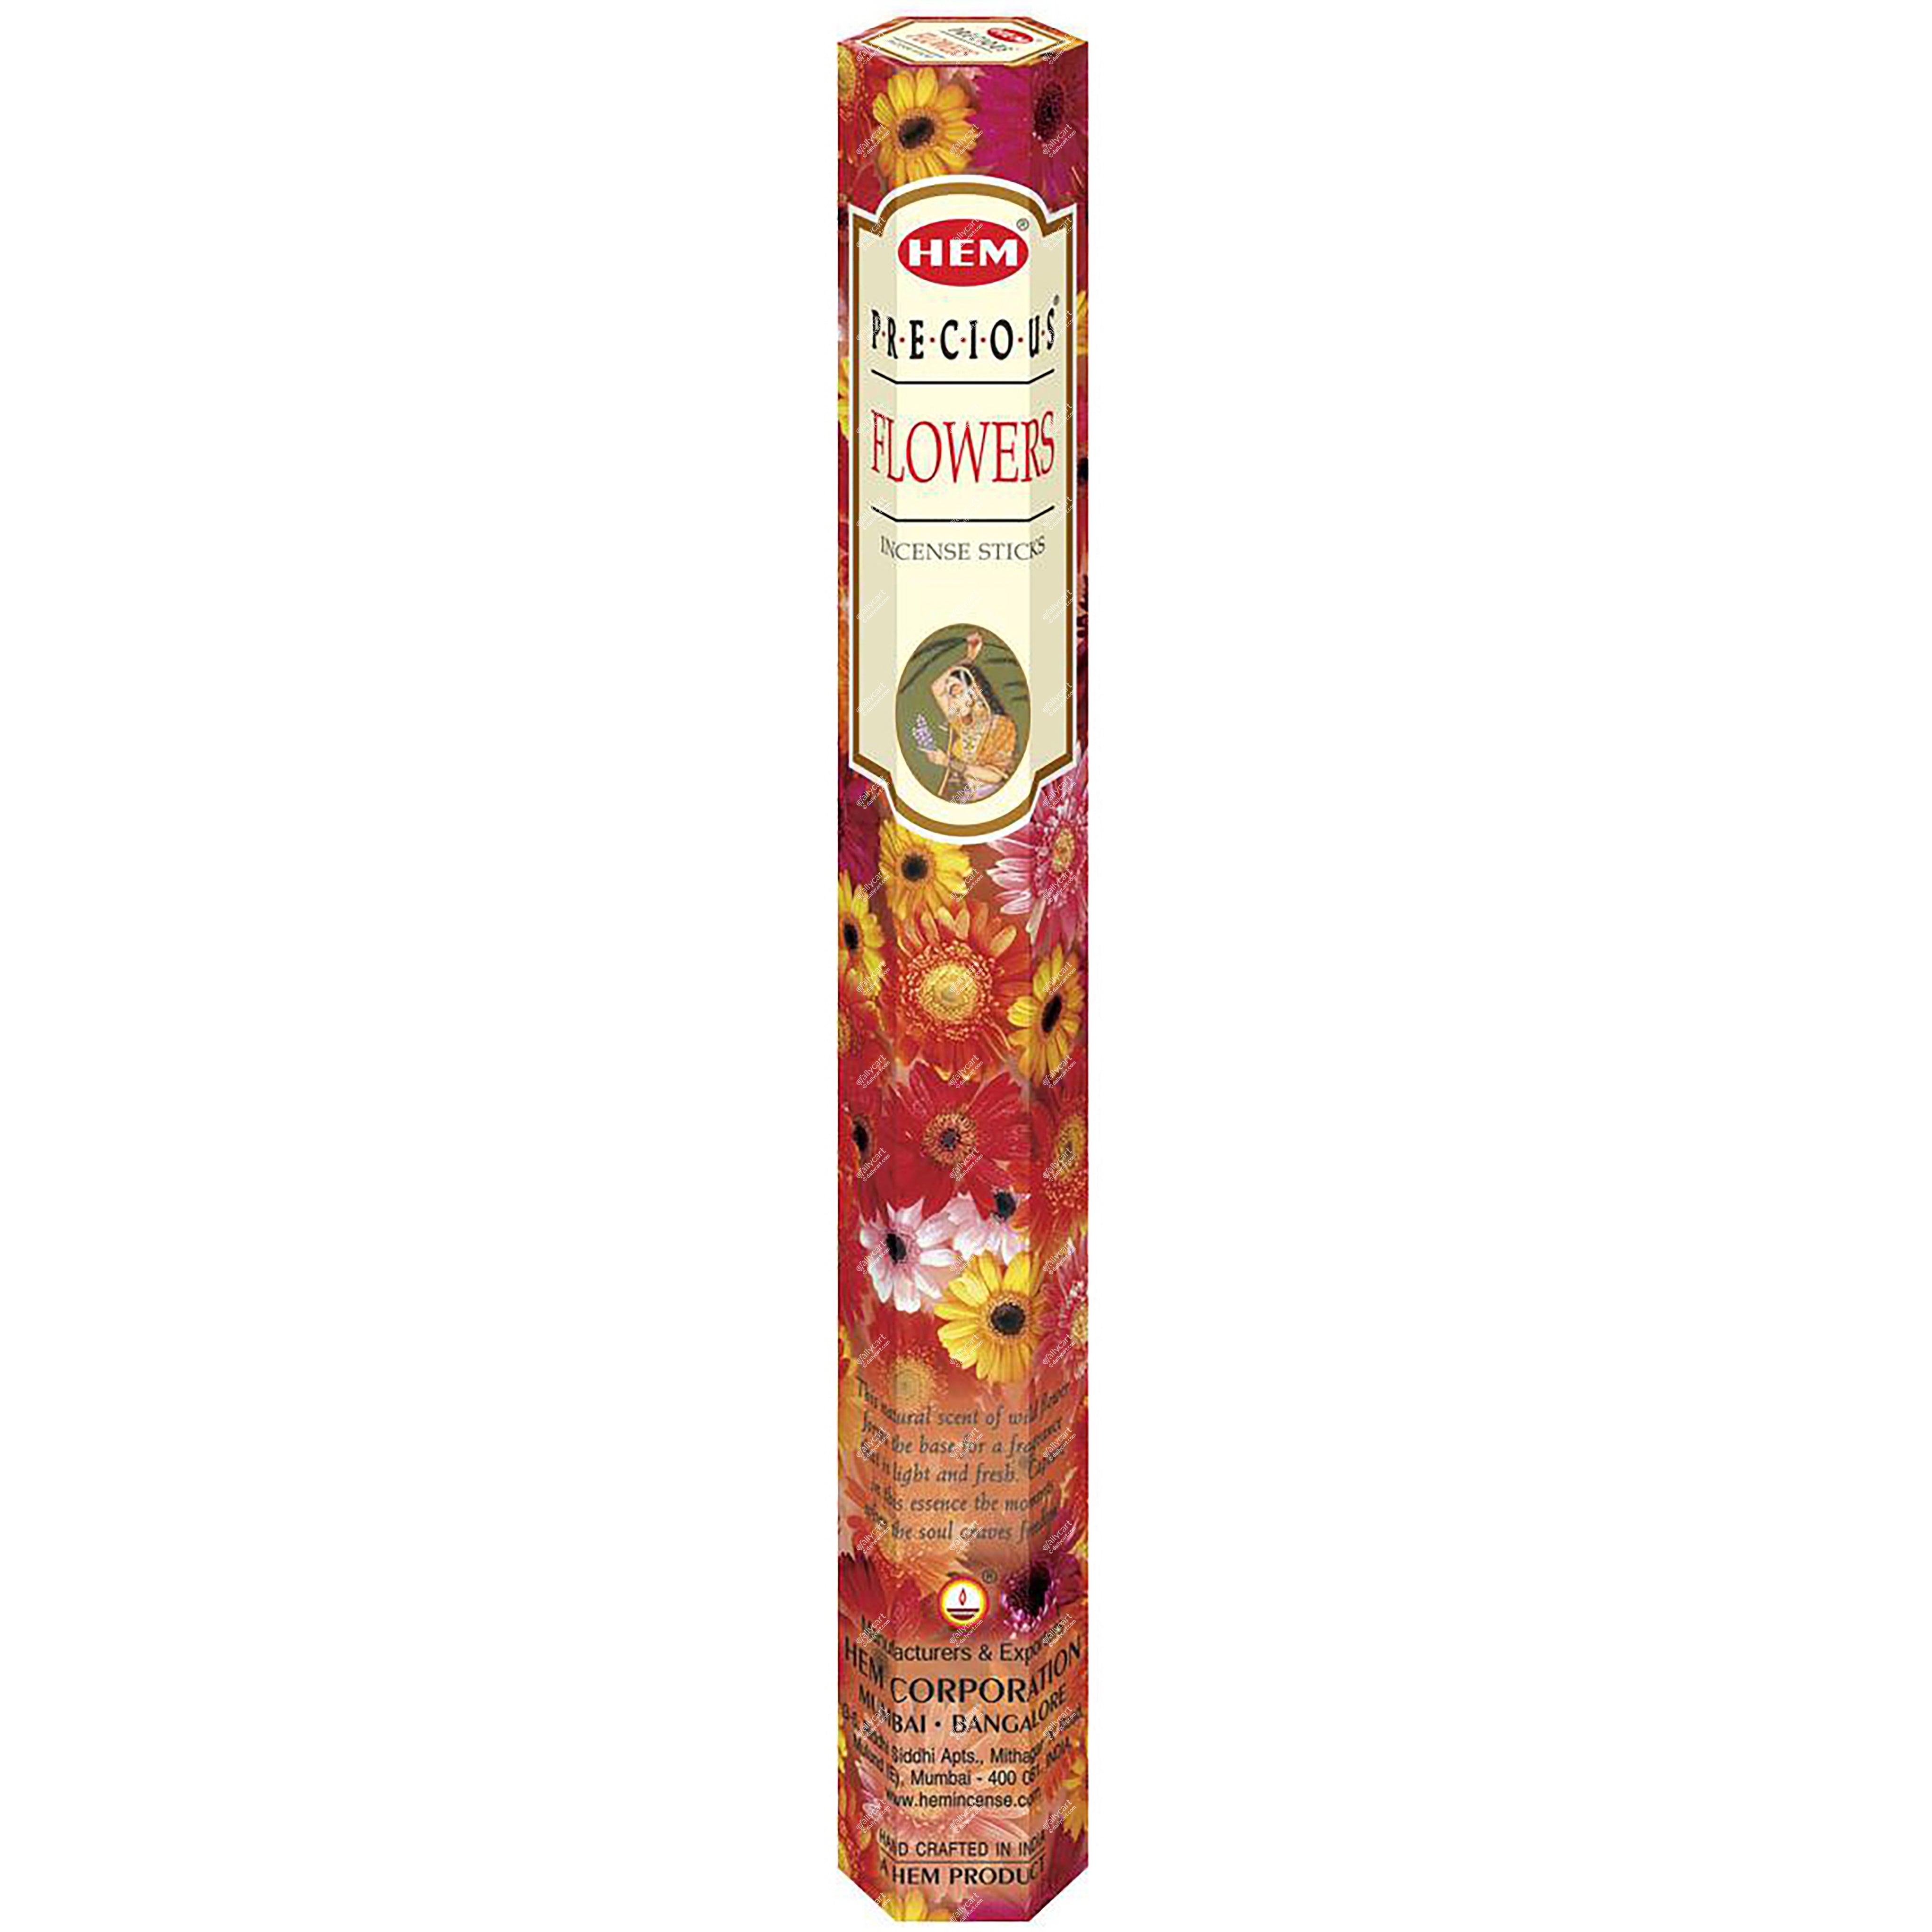 Hem Precious Flower Incense Sticks, 20 Sticks, 1 Tube